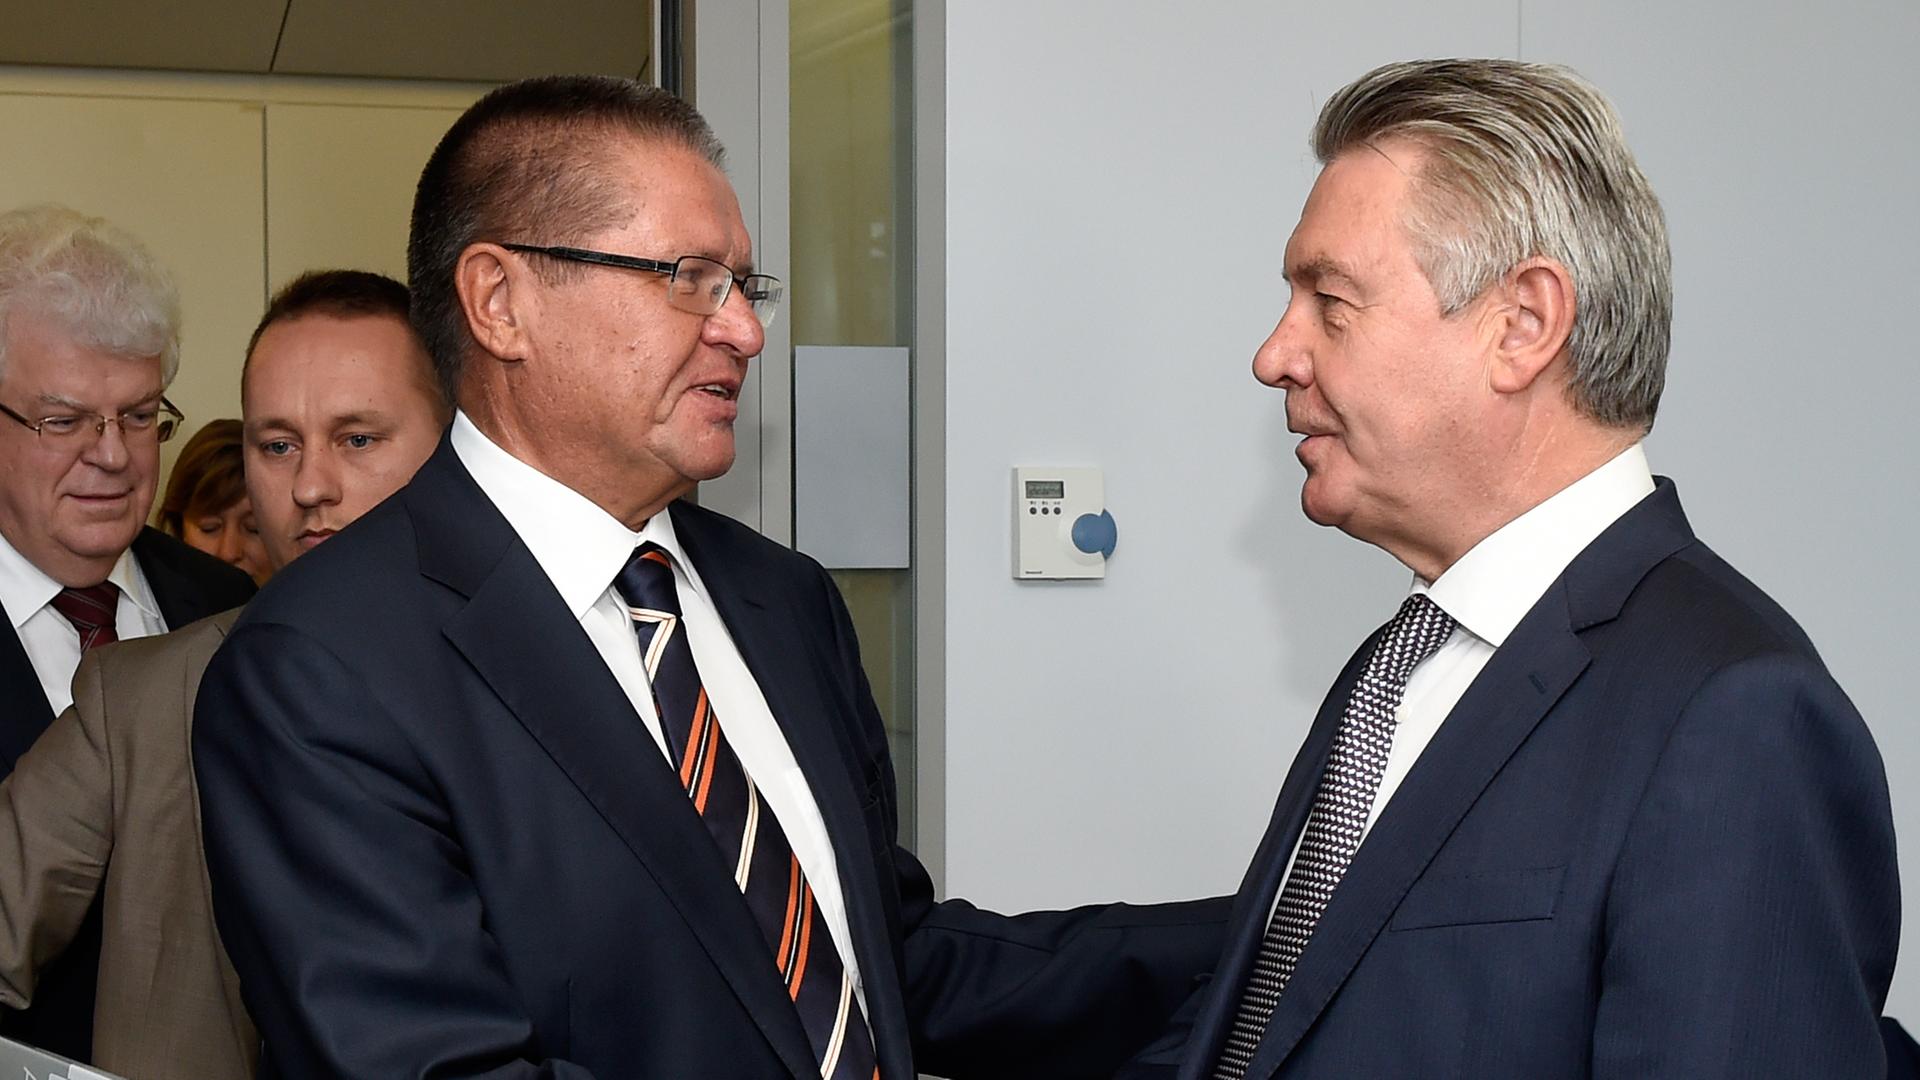 EU-Handelskommissar de Gucht (r.) schüttelt die Hand des russischen Wirtschaftsministers Uljukajew vor dem Treffen in Brüssel.